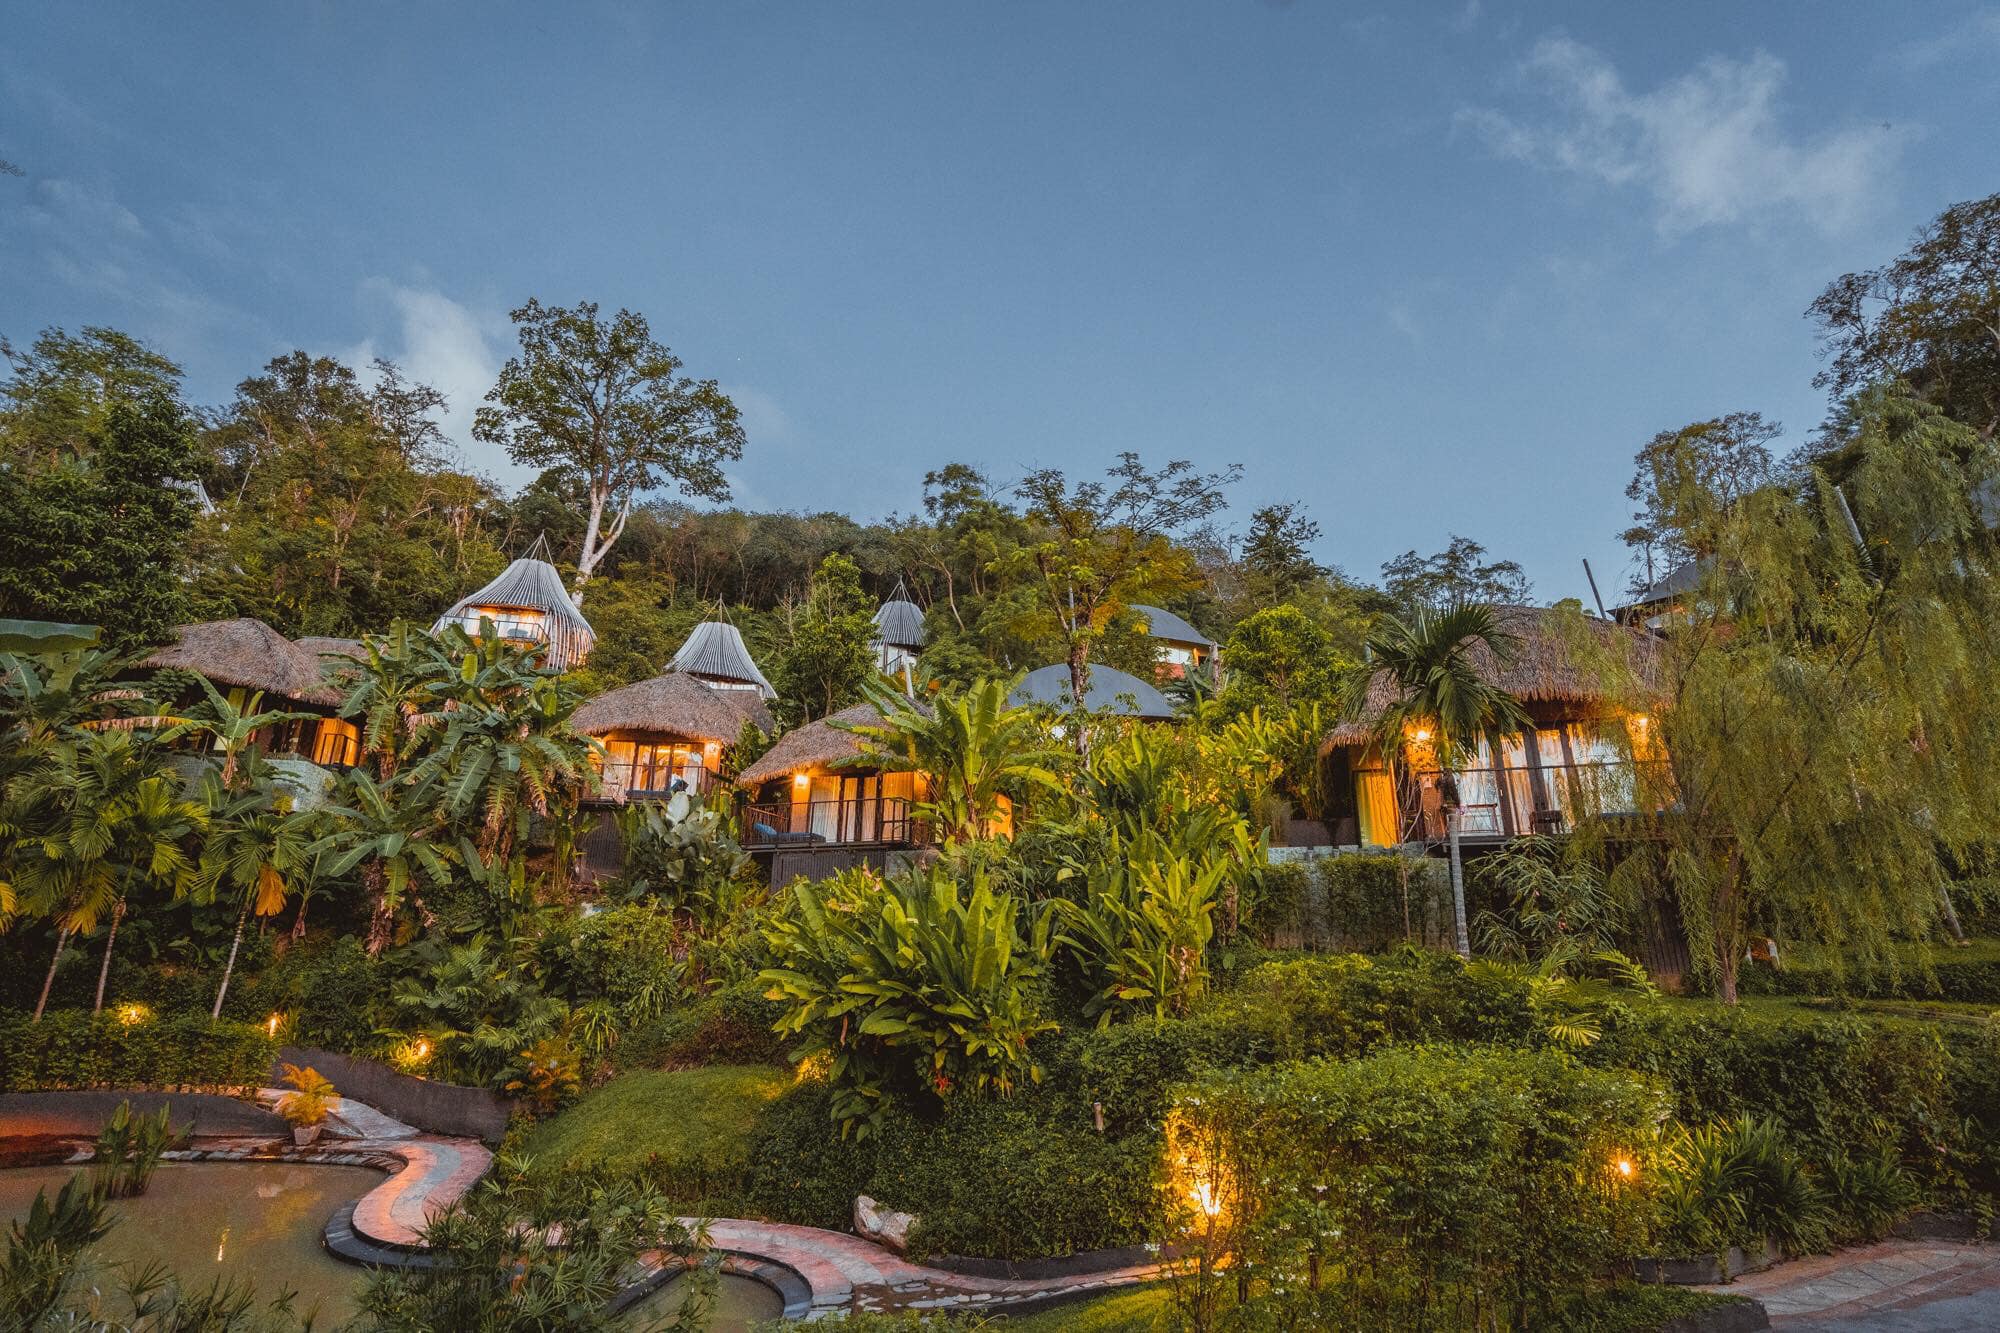 Độc đáo Resort tổ chim nằm lơ lửng giữa những tán cây xanh ở Thái Lan, thơ mộng như ngôi nhà của các chú lùn Hobbit - Ảnh 3.